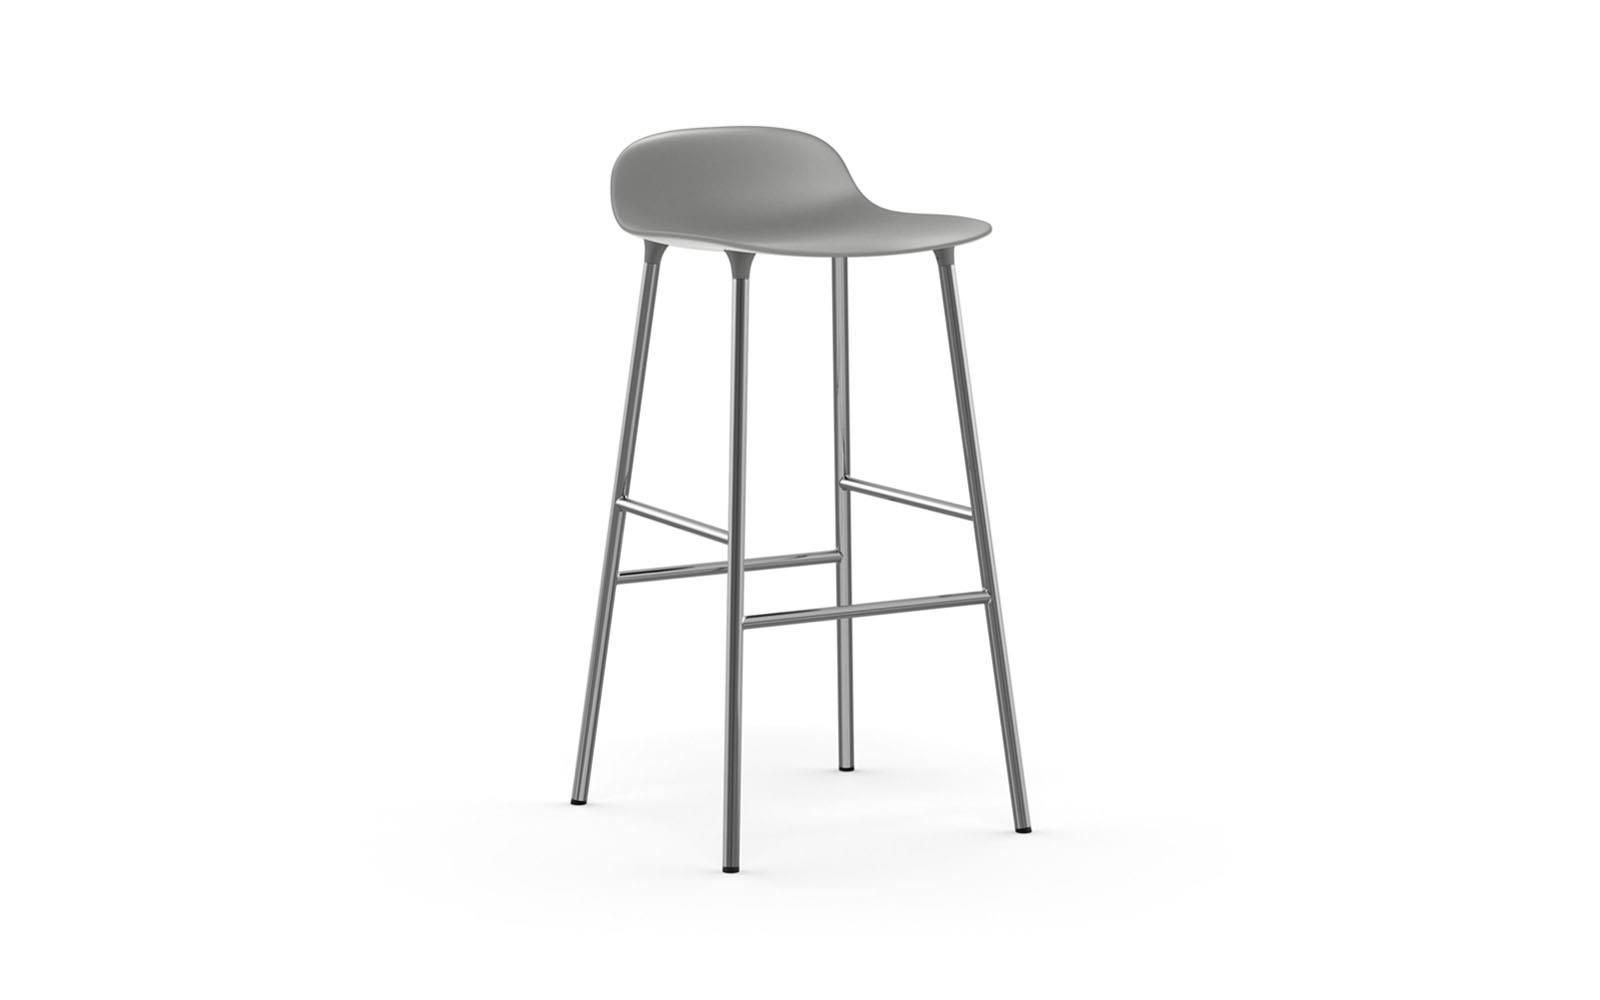 Molded Plastic S Chair With Chrome Legs, Chrome Bar Stools